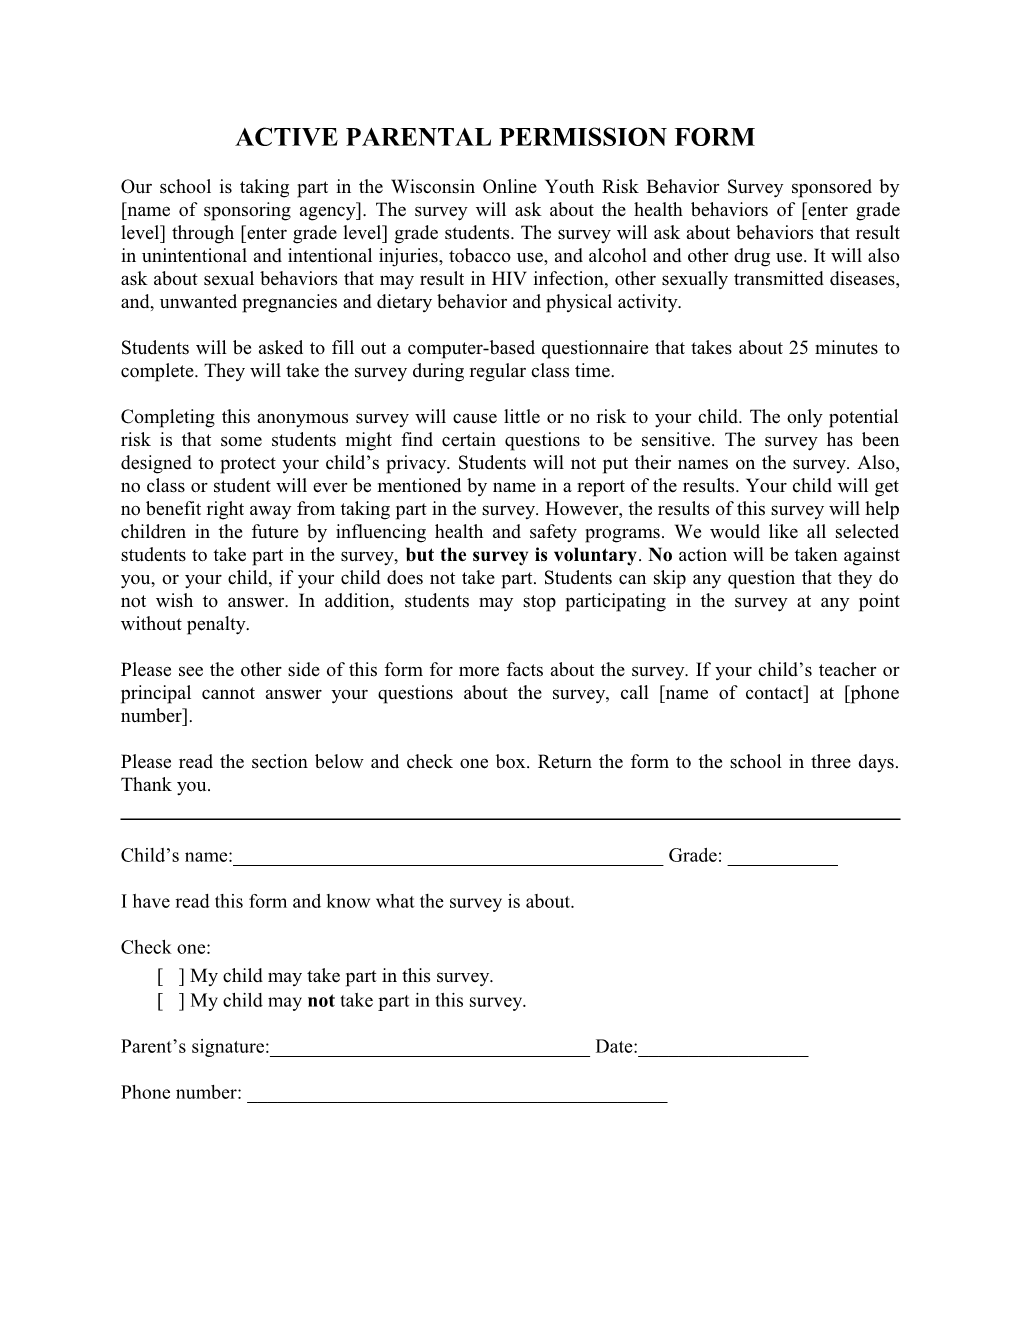 Active Parental Permission Form